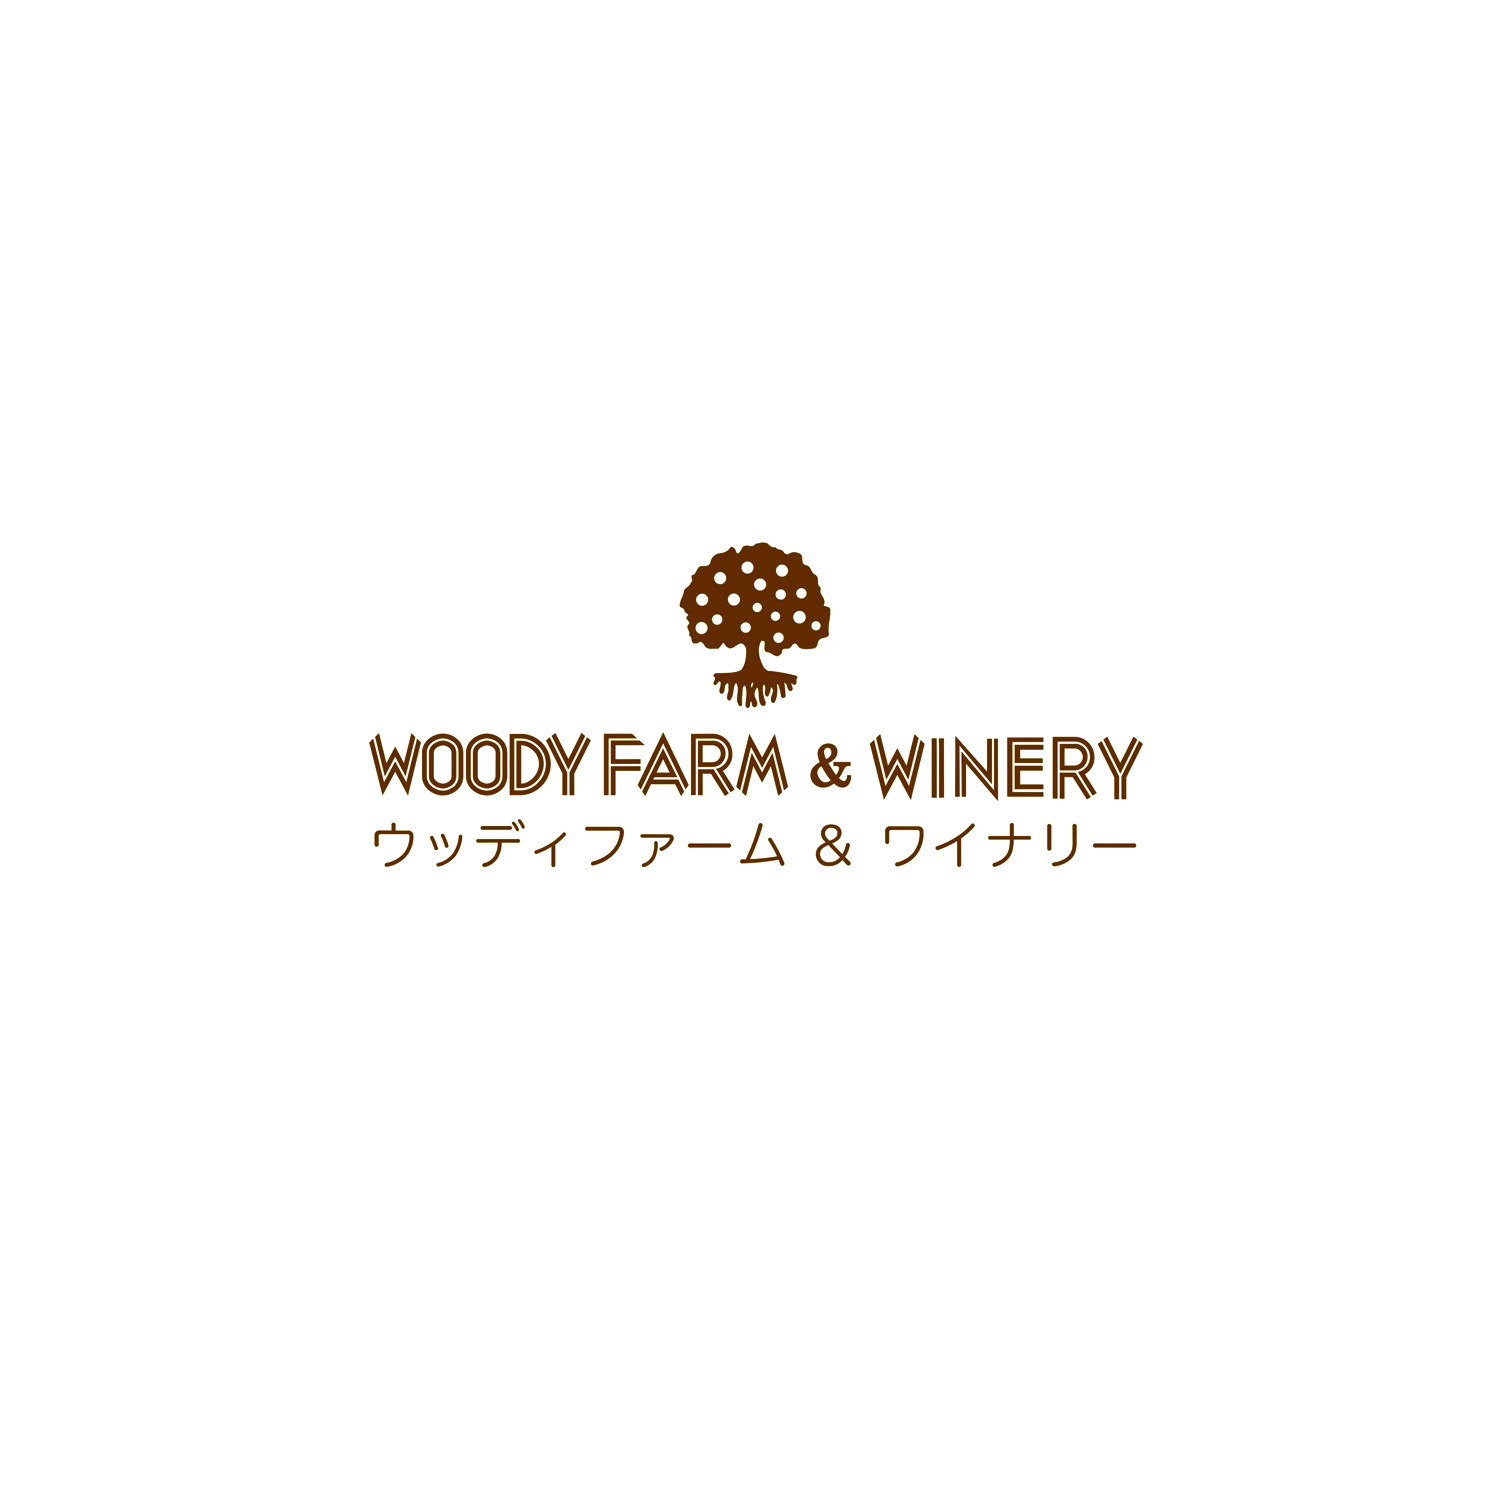 Woody Farm & Winery